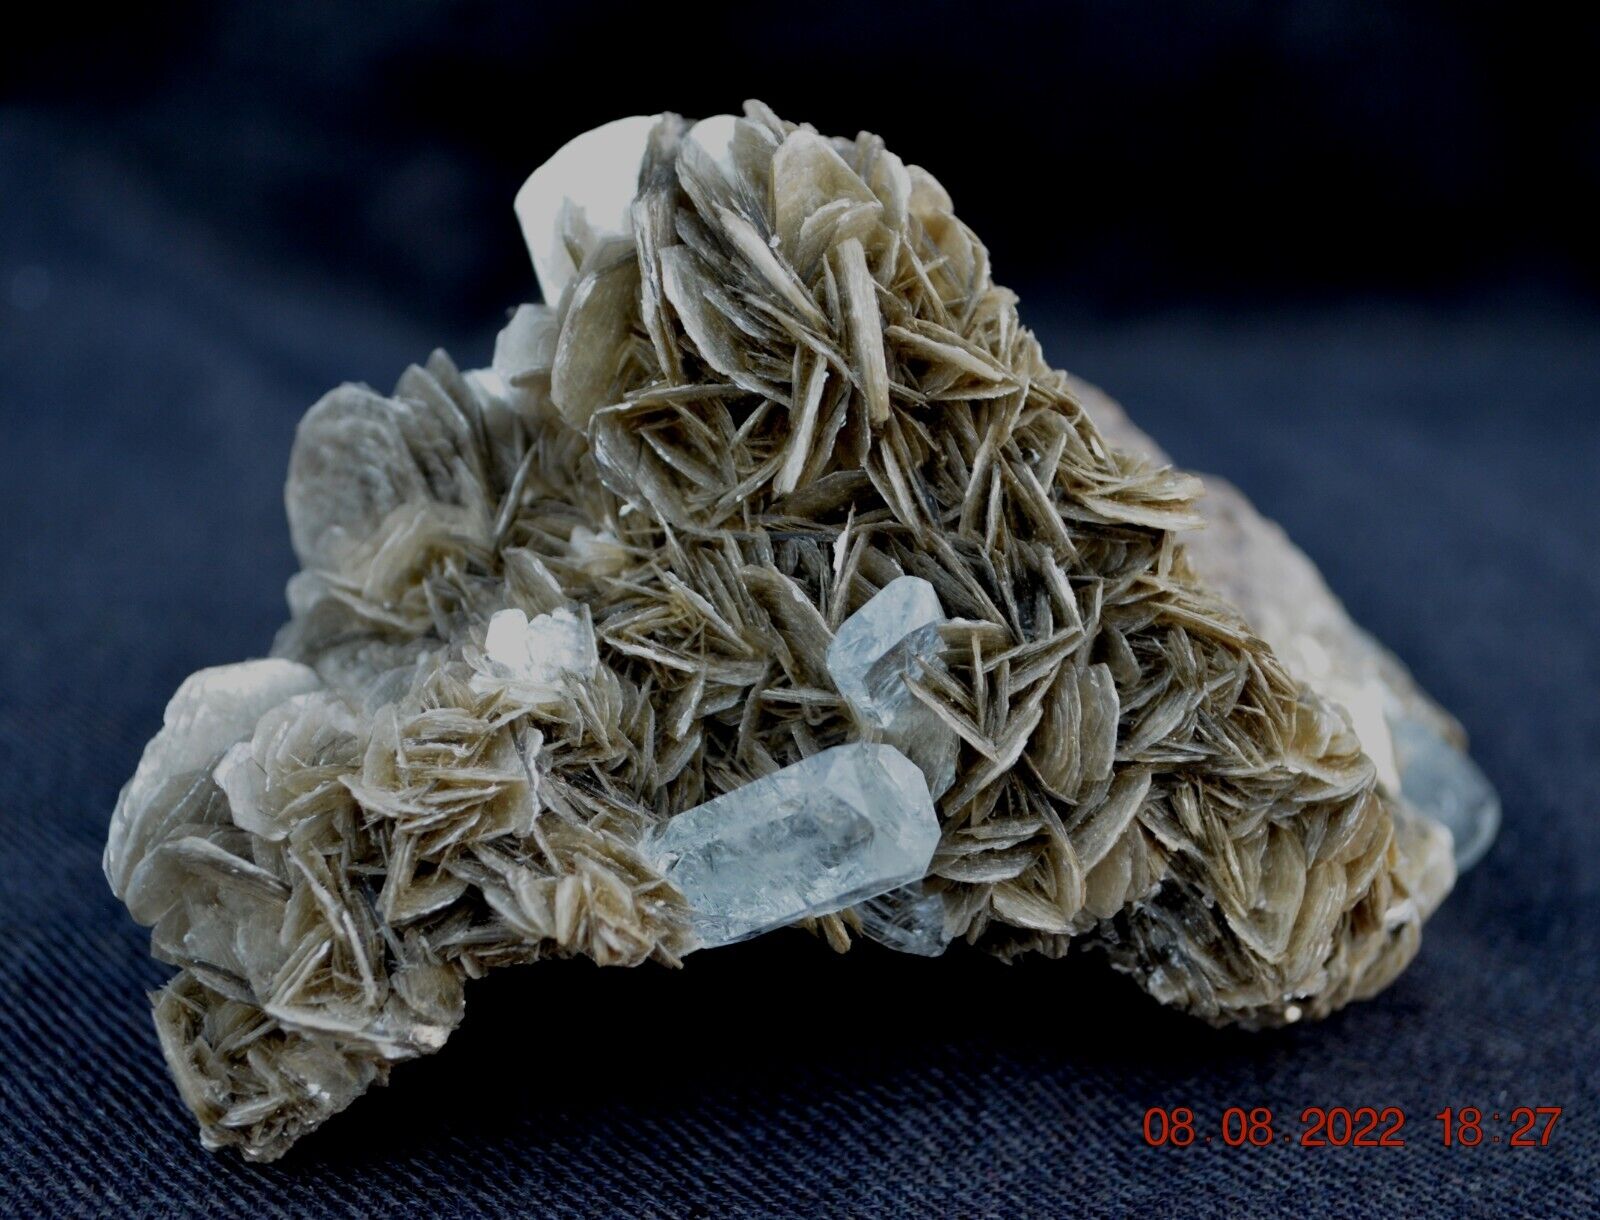 AQUAMARINE BERYL var. GOSHENITE crystals in MUSCOVITE_644g magnificent specimen